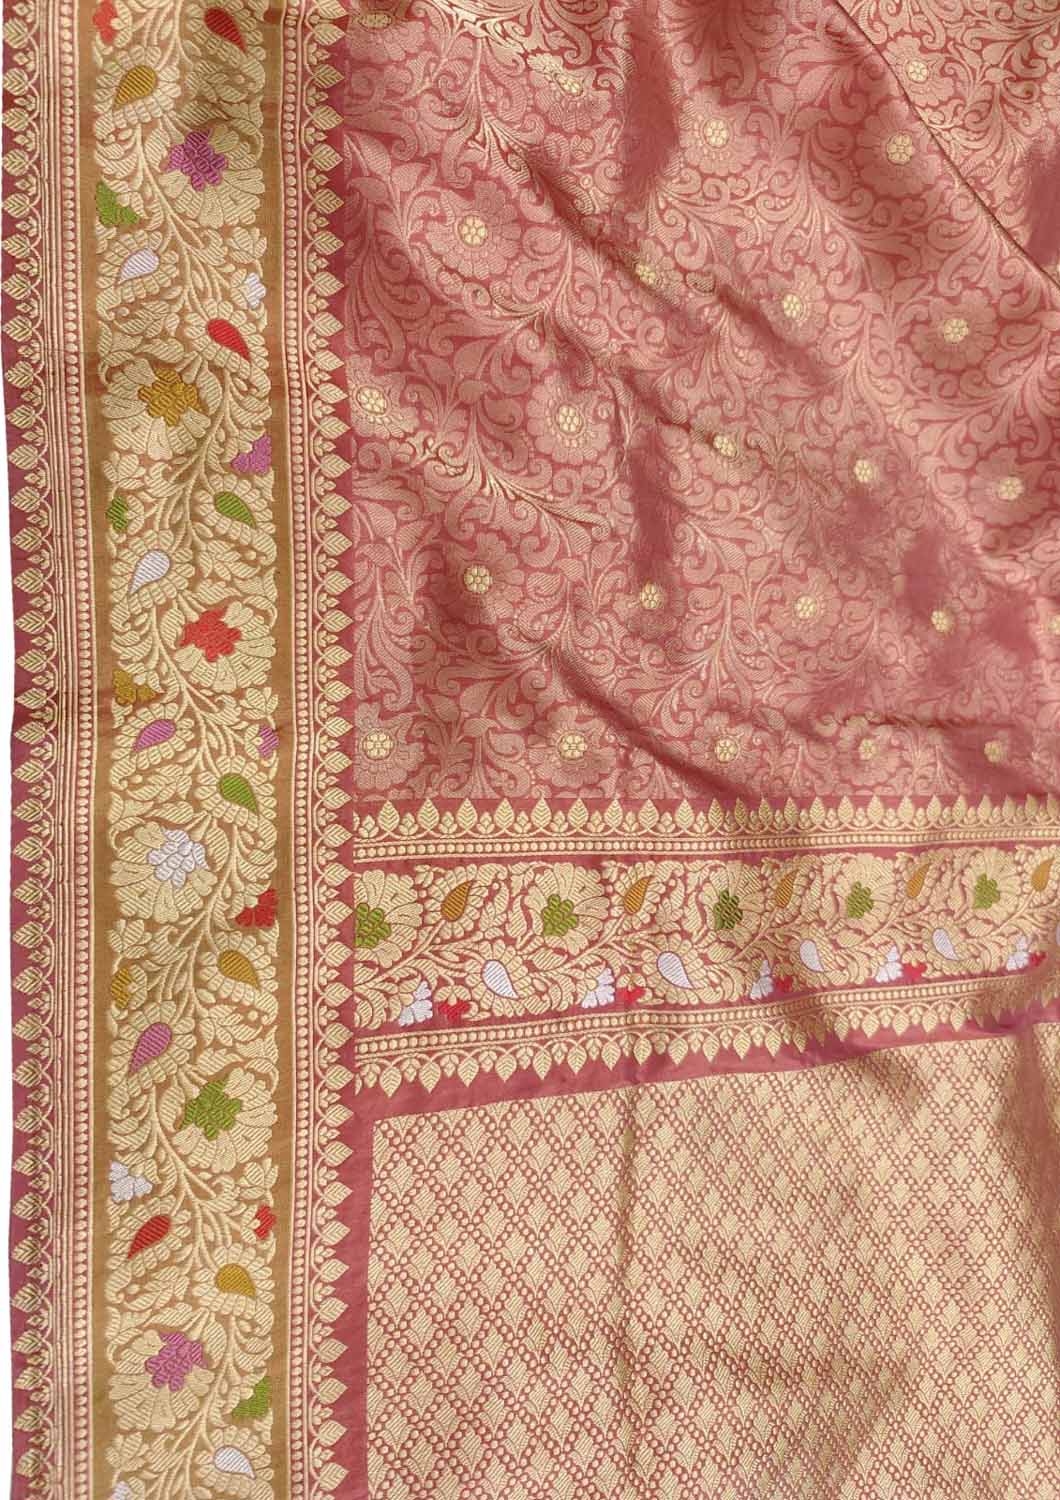 Exquisite Red Banarasi Handloom Silk Saree - Luxurion World